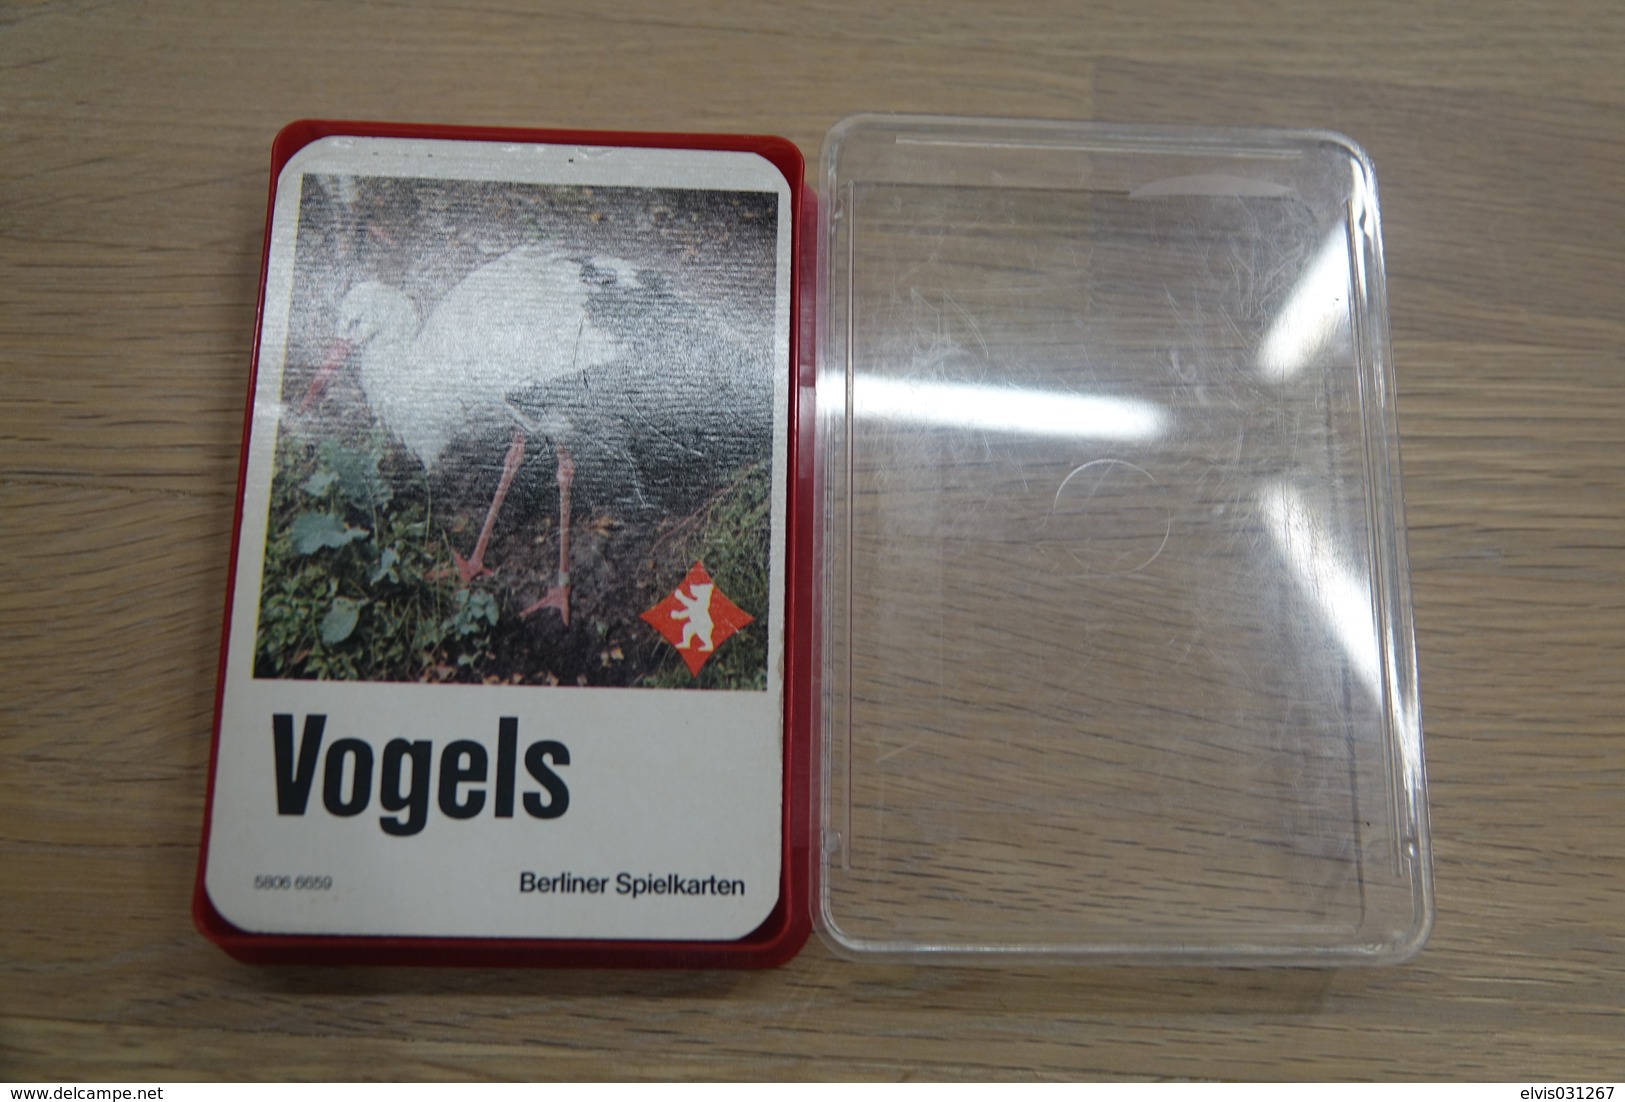 Speelkaarten - Kwartet, Vogels, Quartett 5806 6659, Berliner Spielkarten, *** - - Cartes à Jouer Classiques